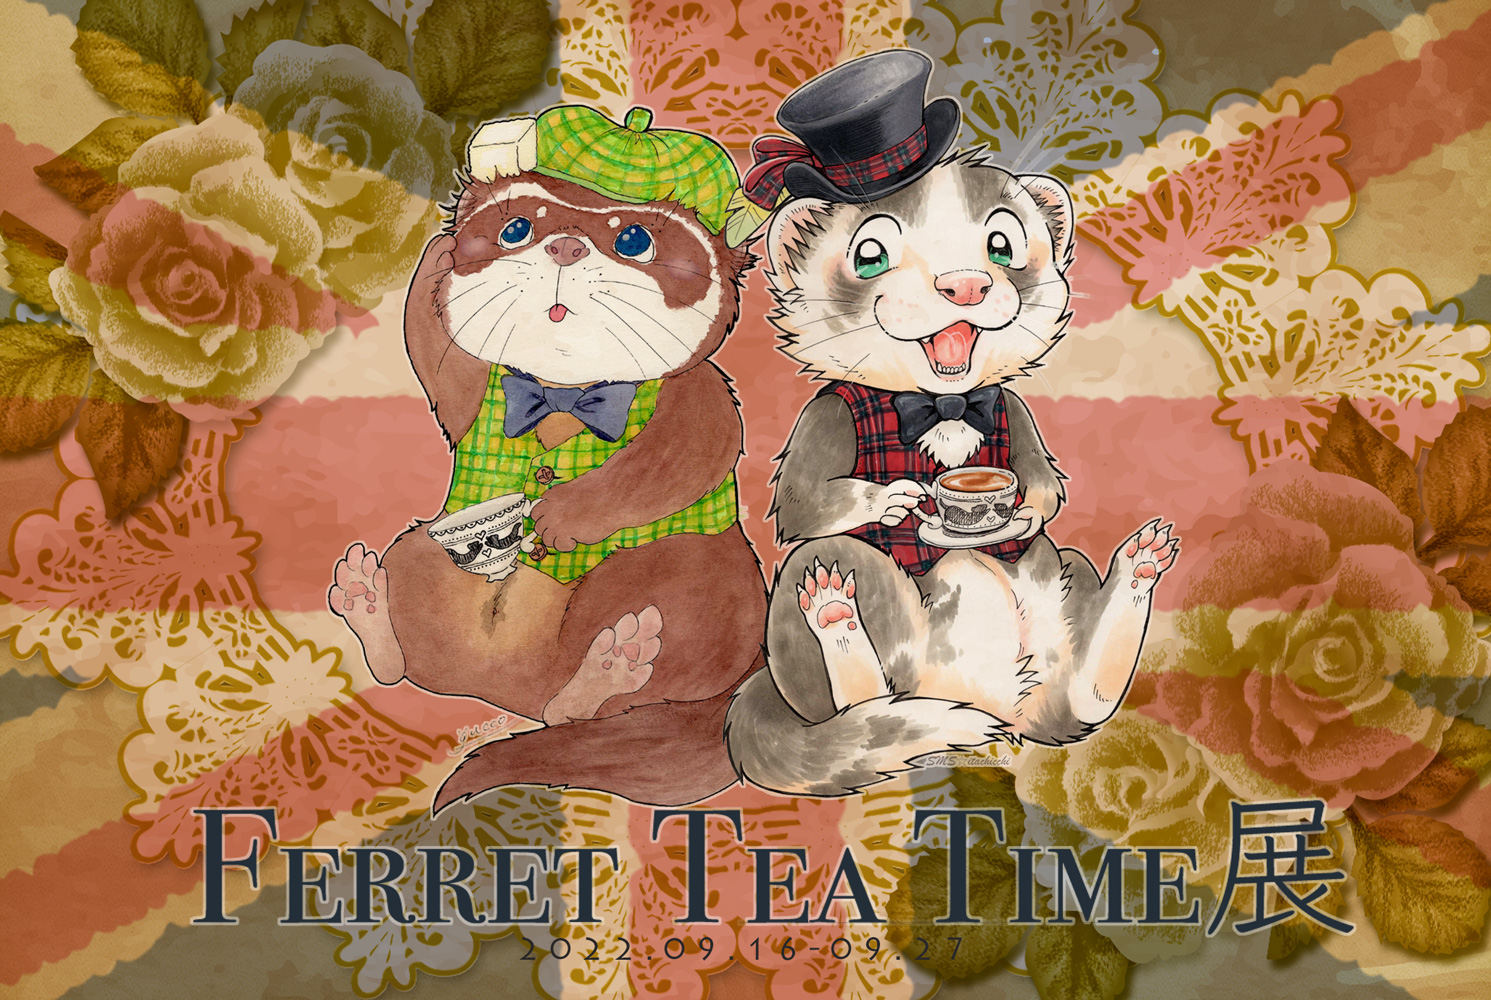 2022年9月16日(金)~9月27日(火)「Ferret Tea Time展」